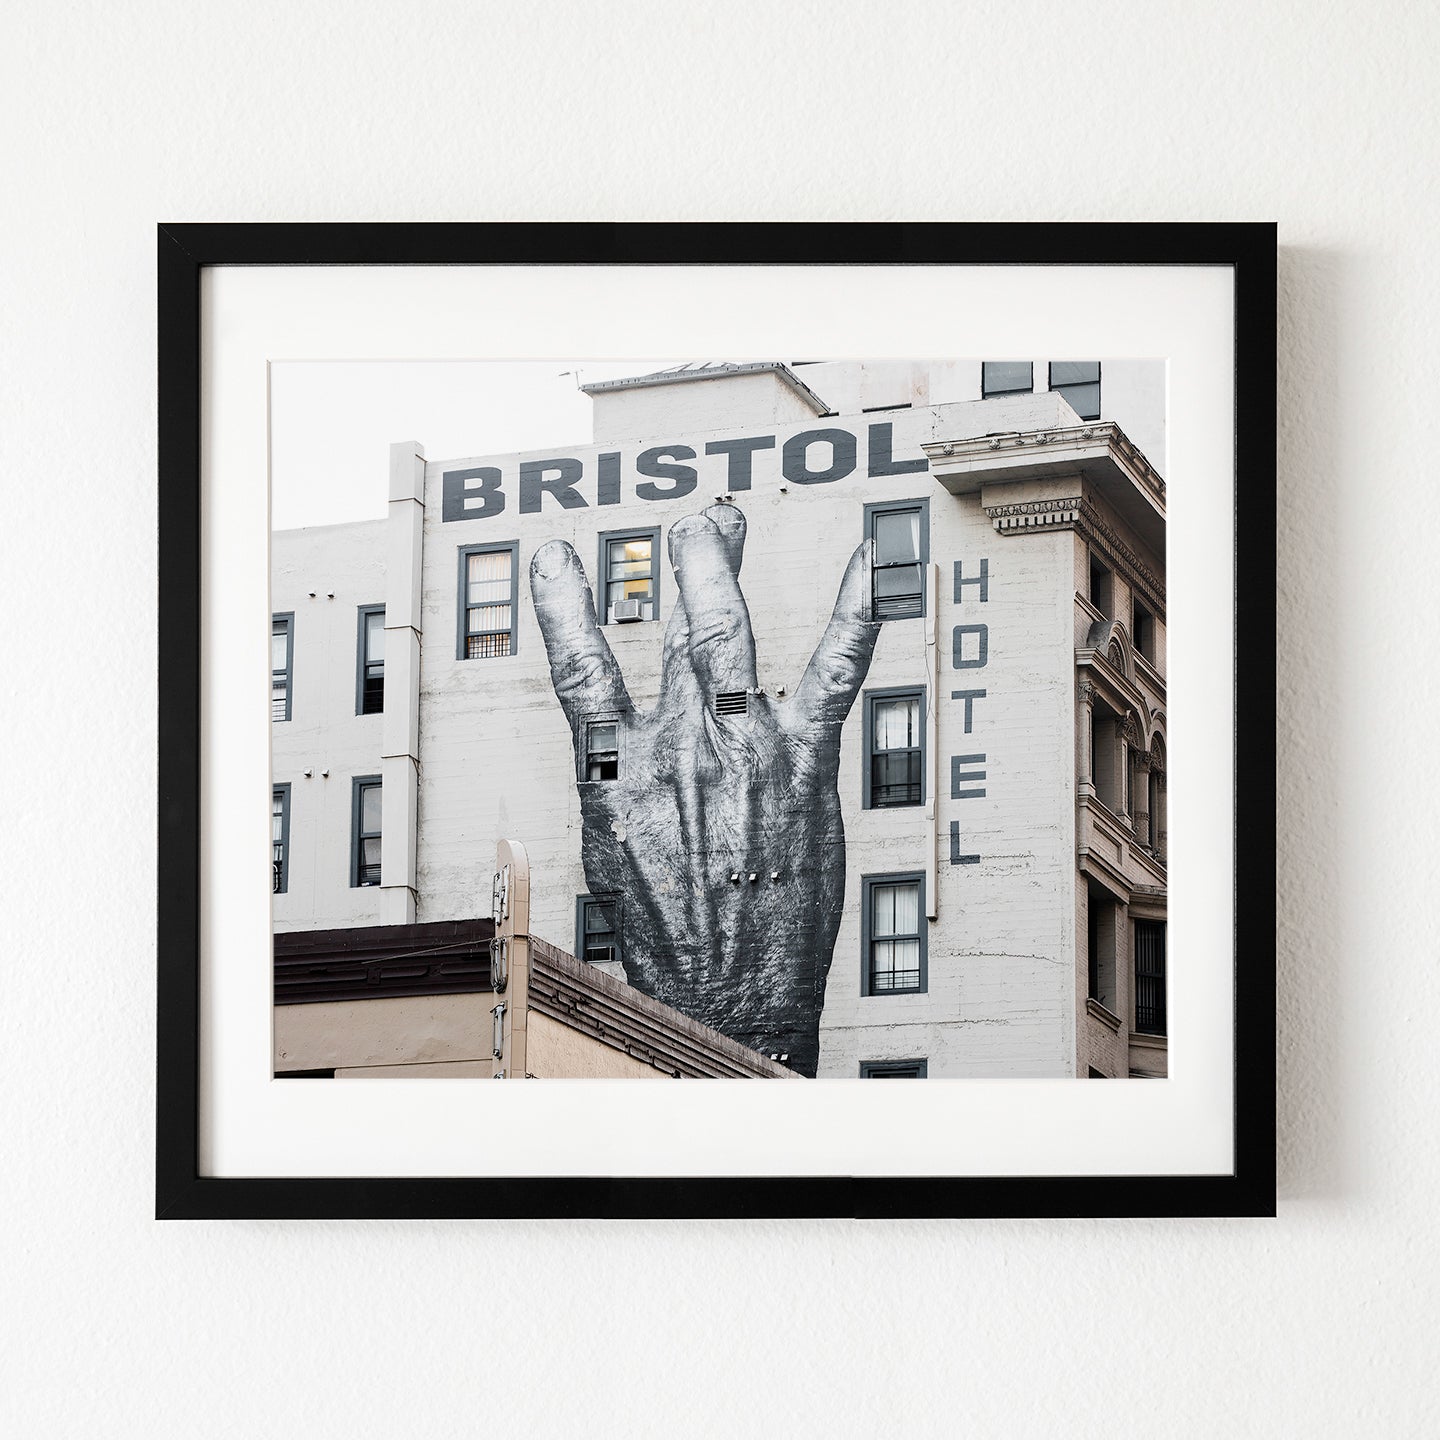 Bristol Hotel Wall Art